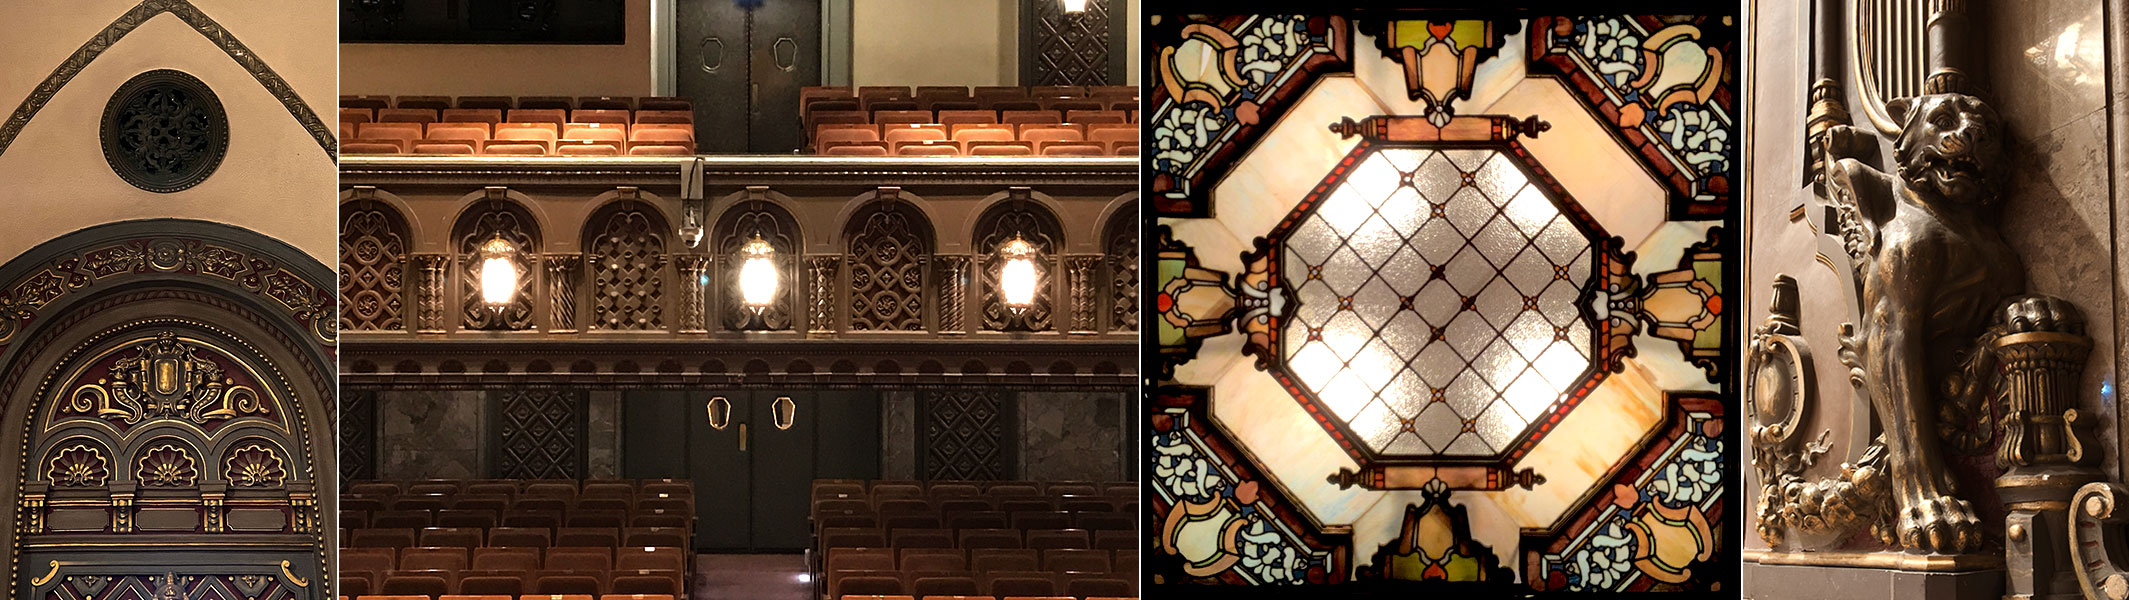 歴史あるレリーフやステンドグラスが美しい三越劇場